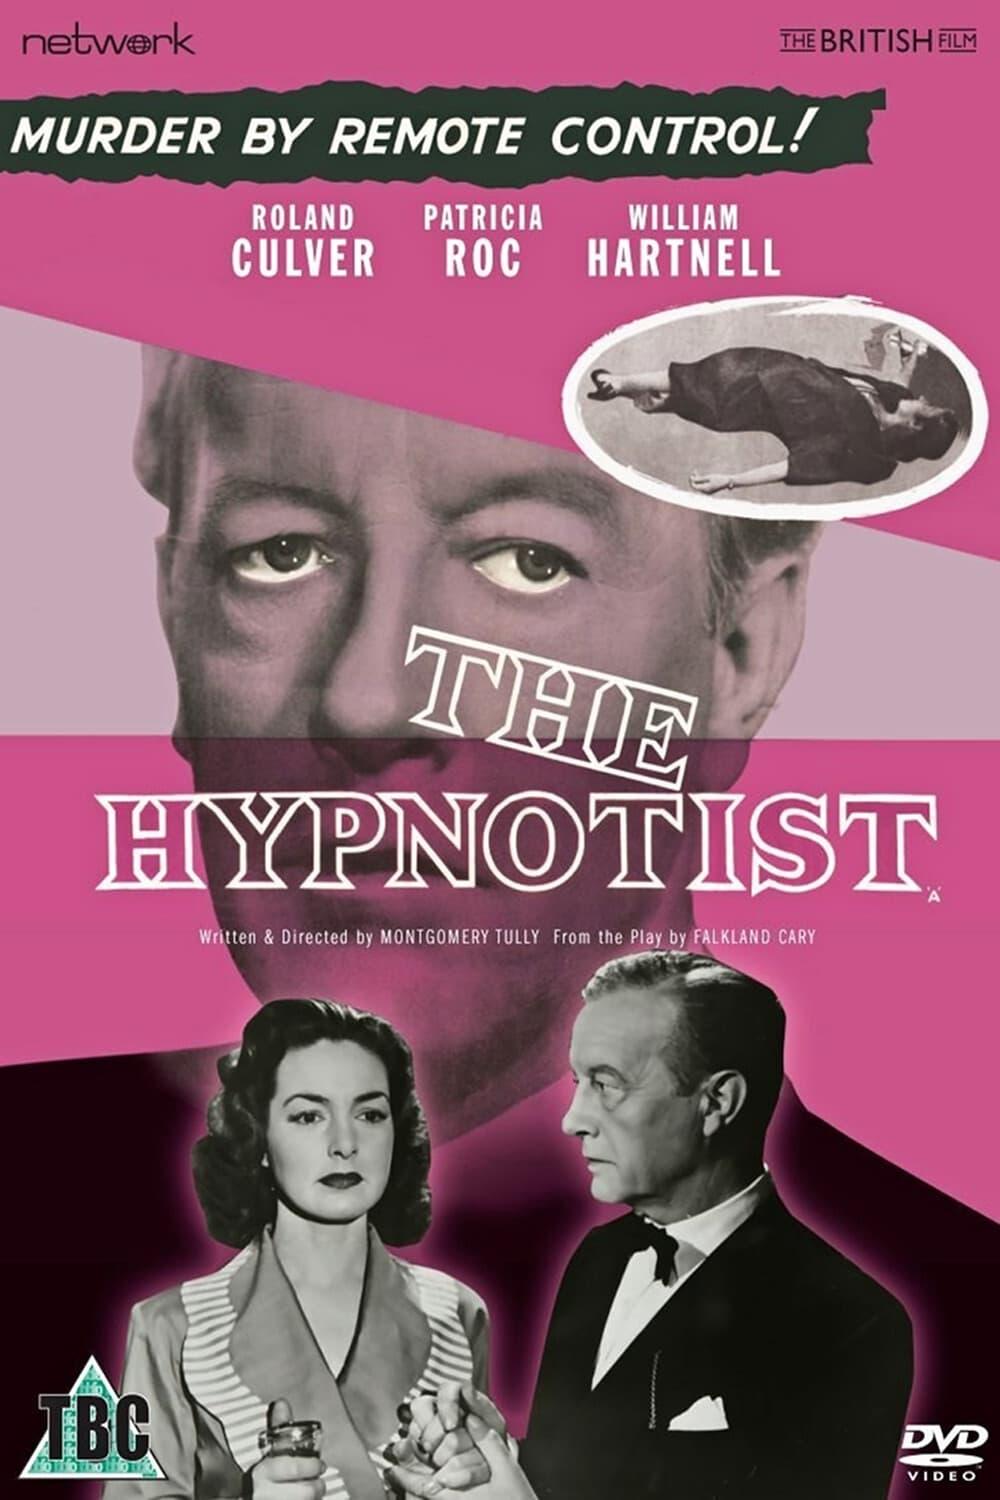 The Hypnotist poster